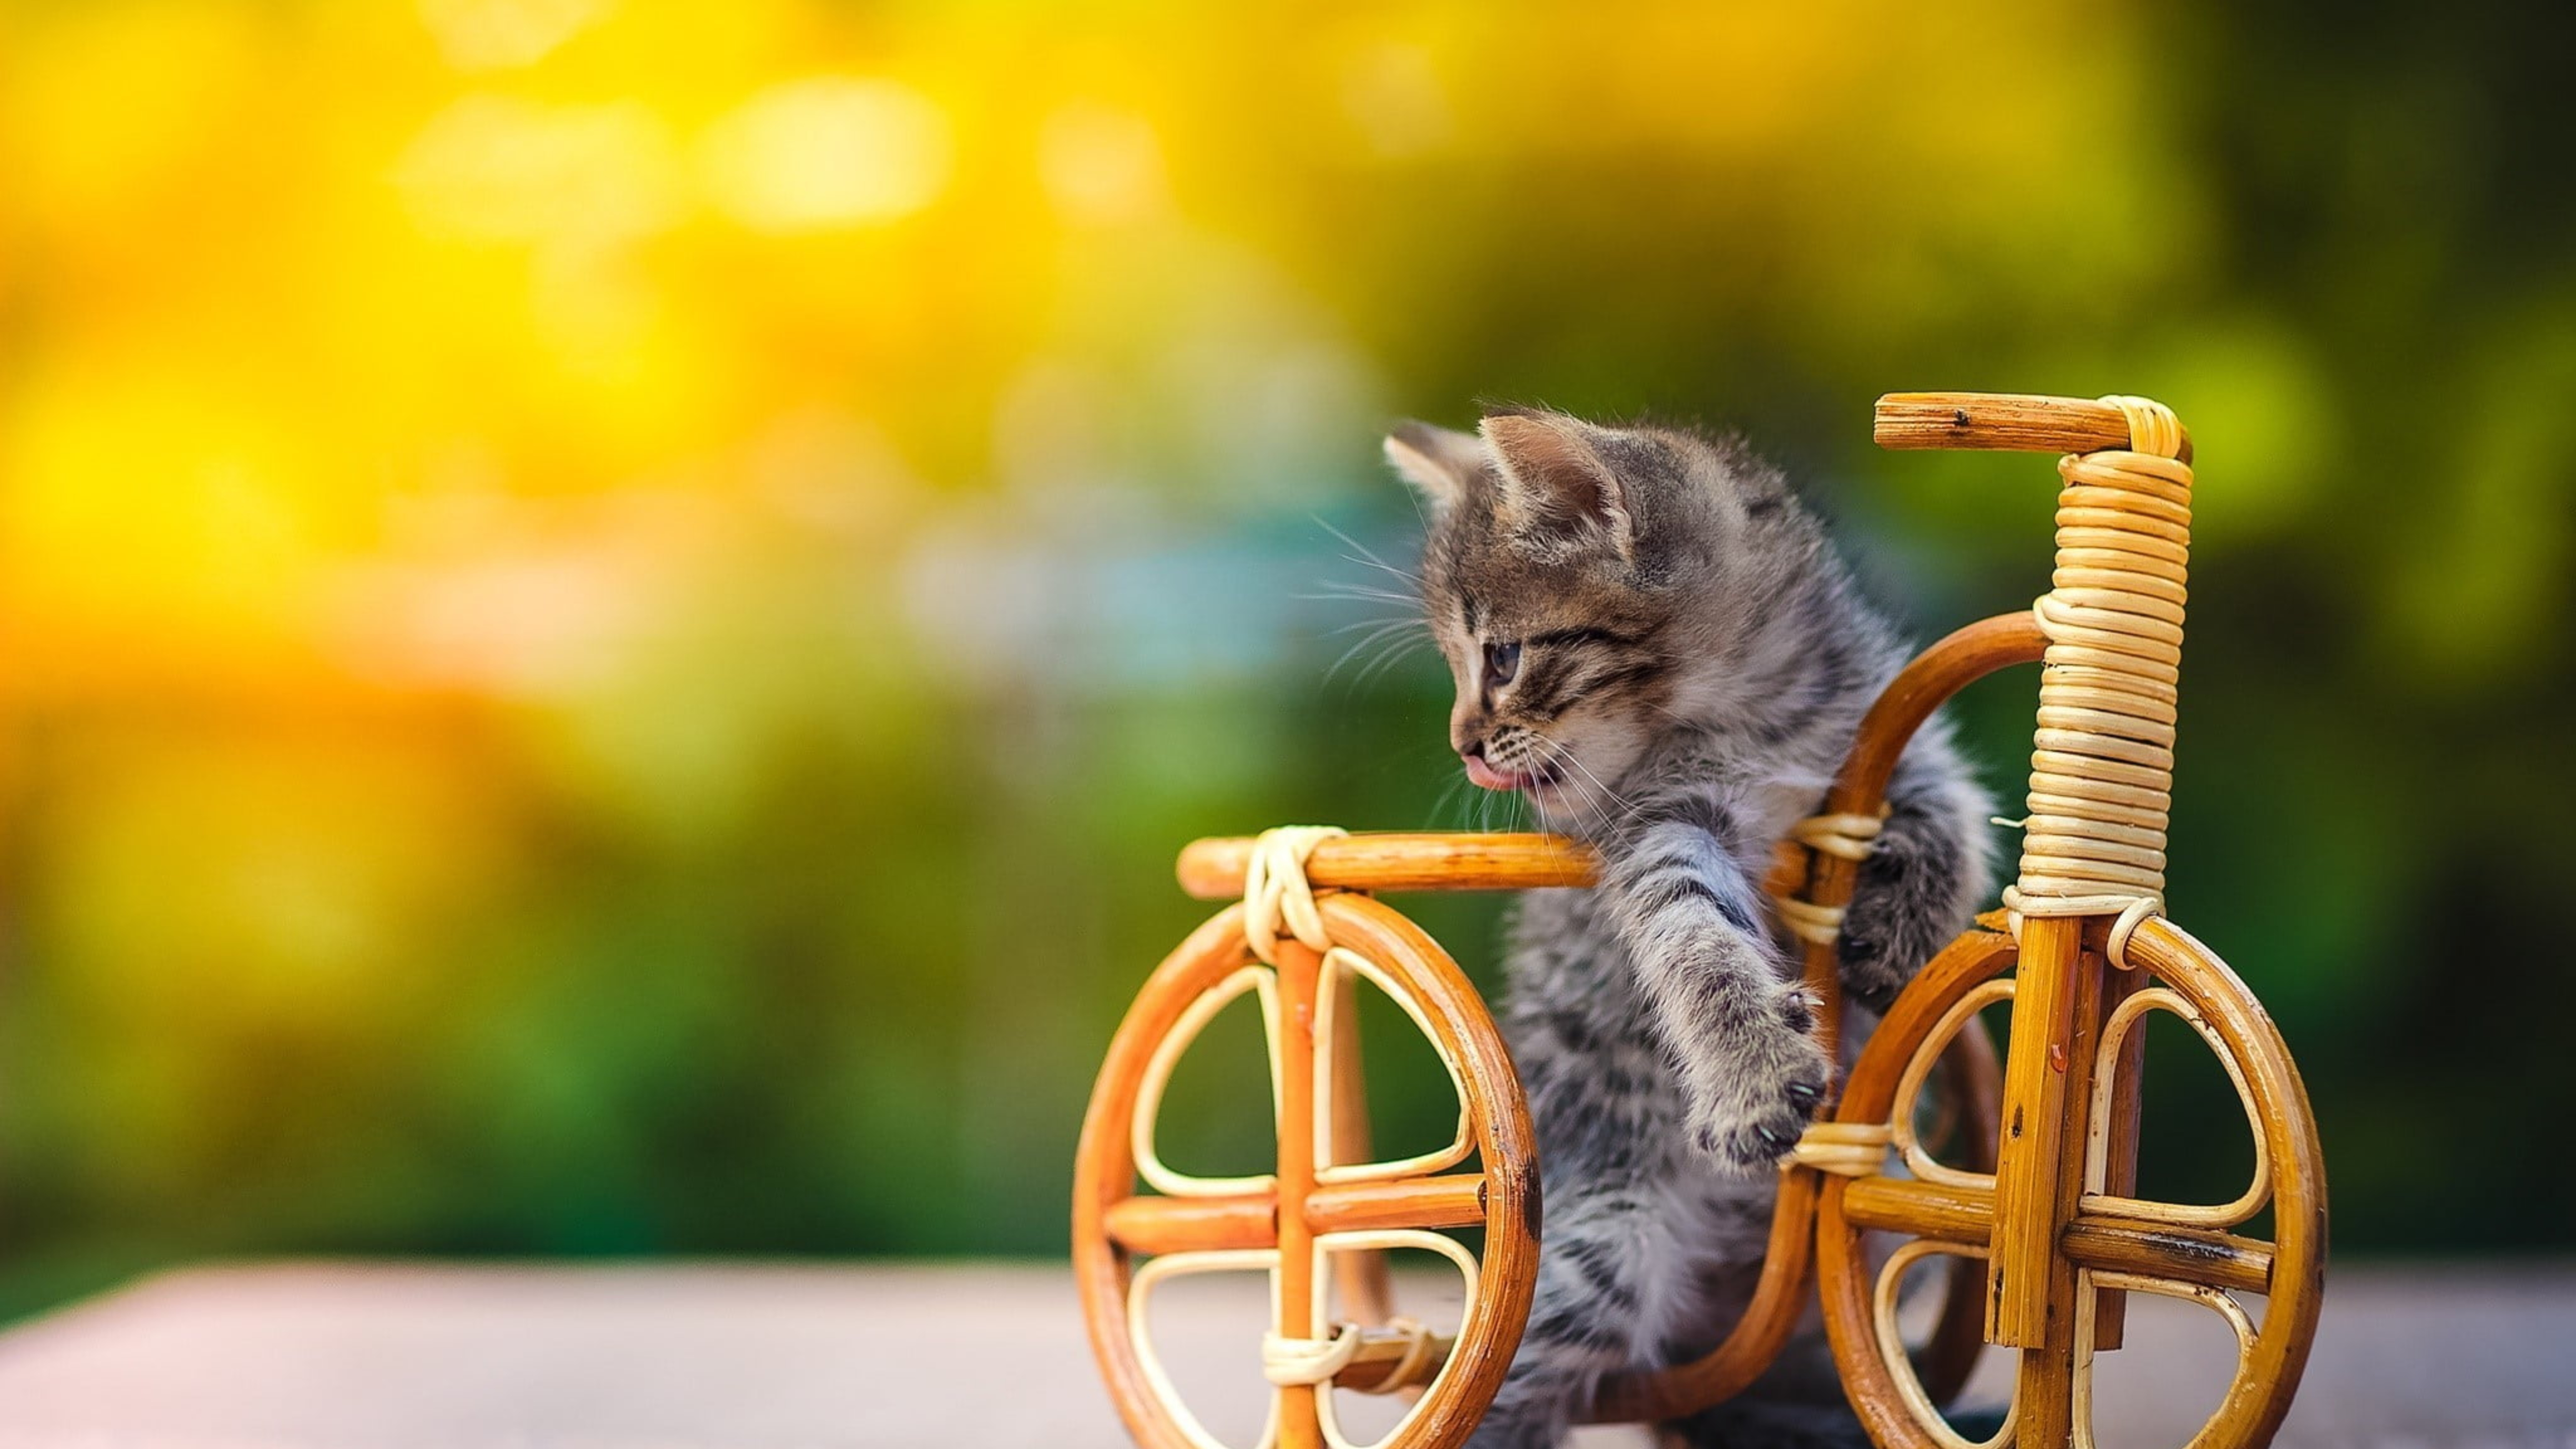 Cat bike